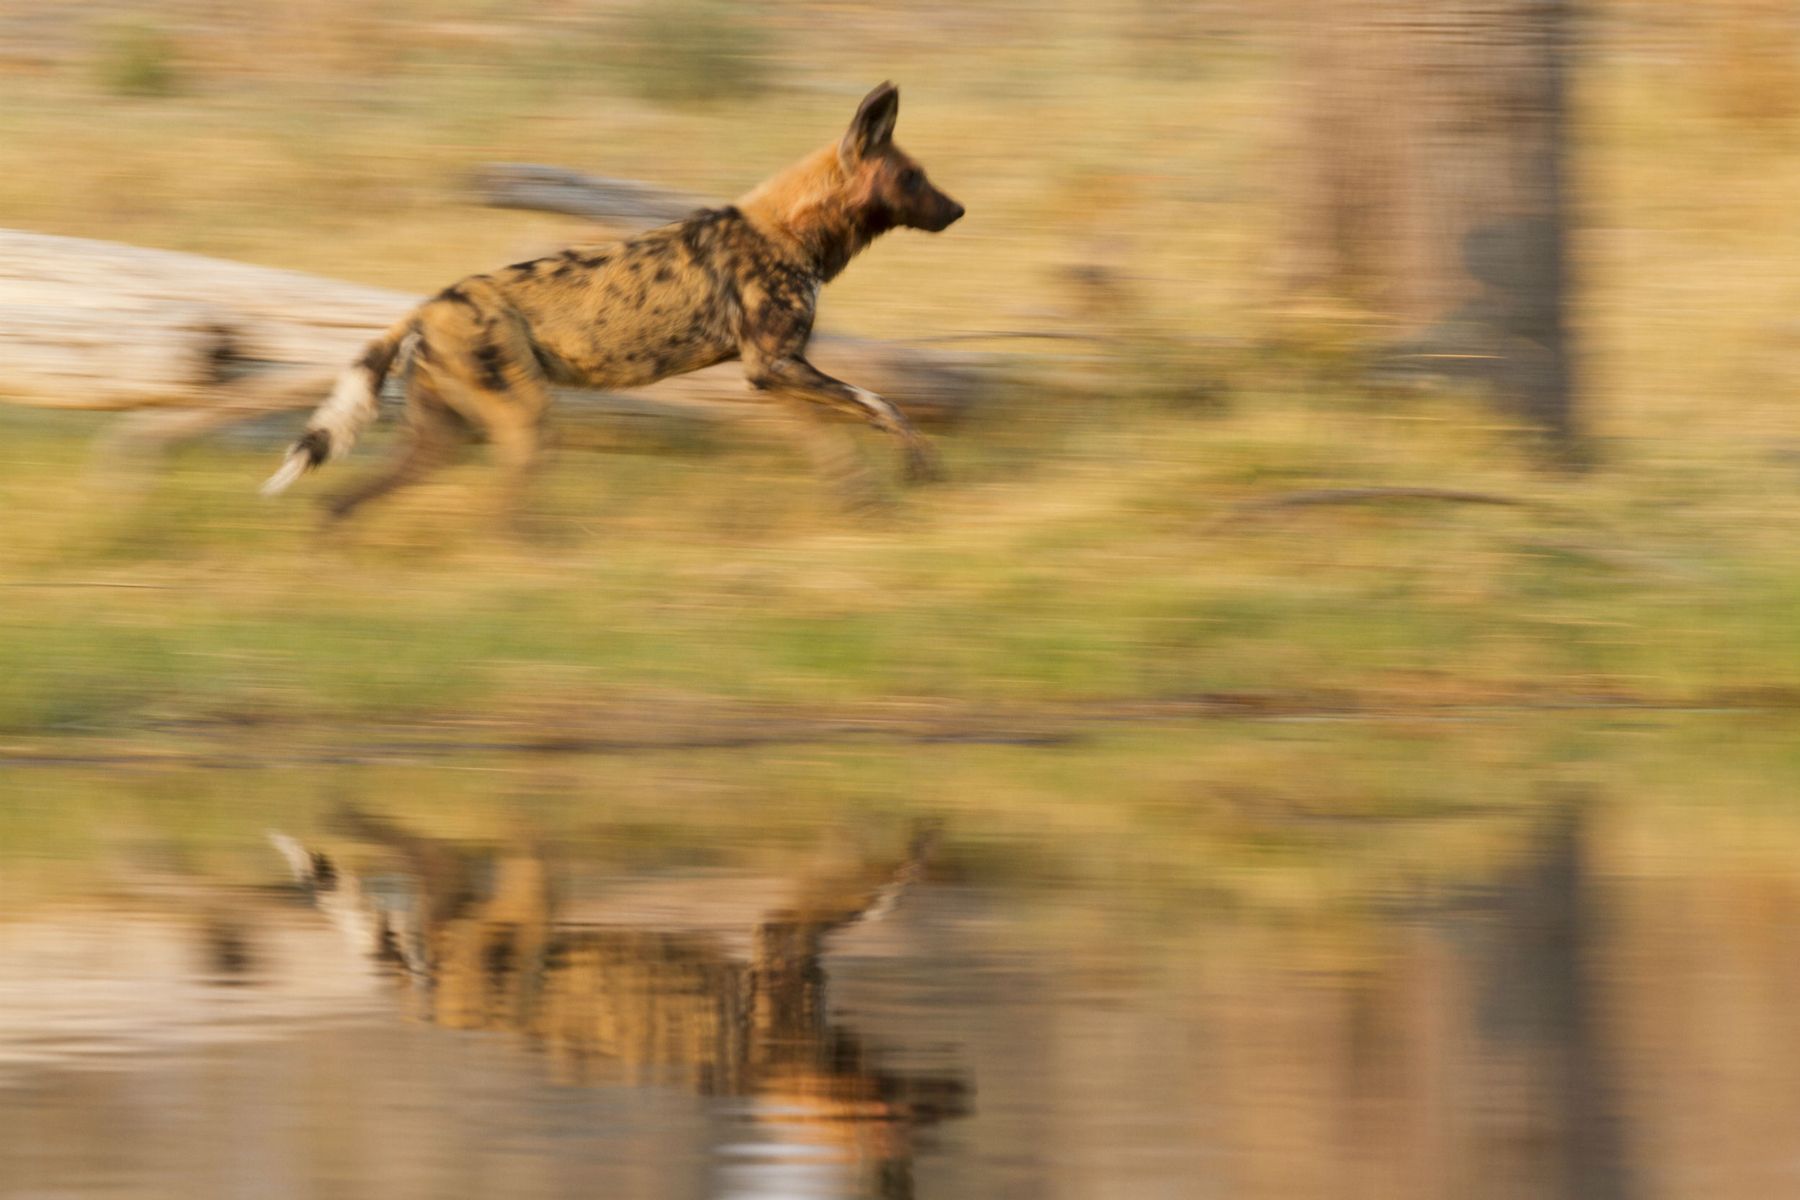 Wild Dogs on the run in Botswana